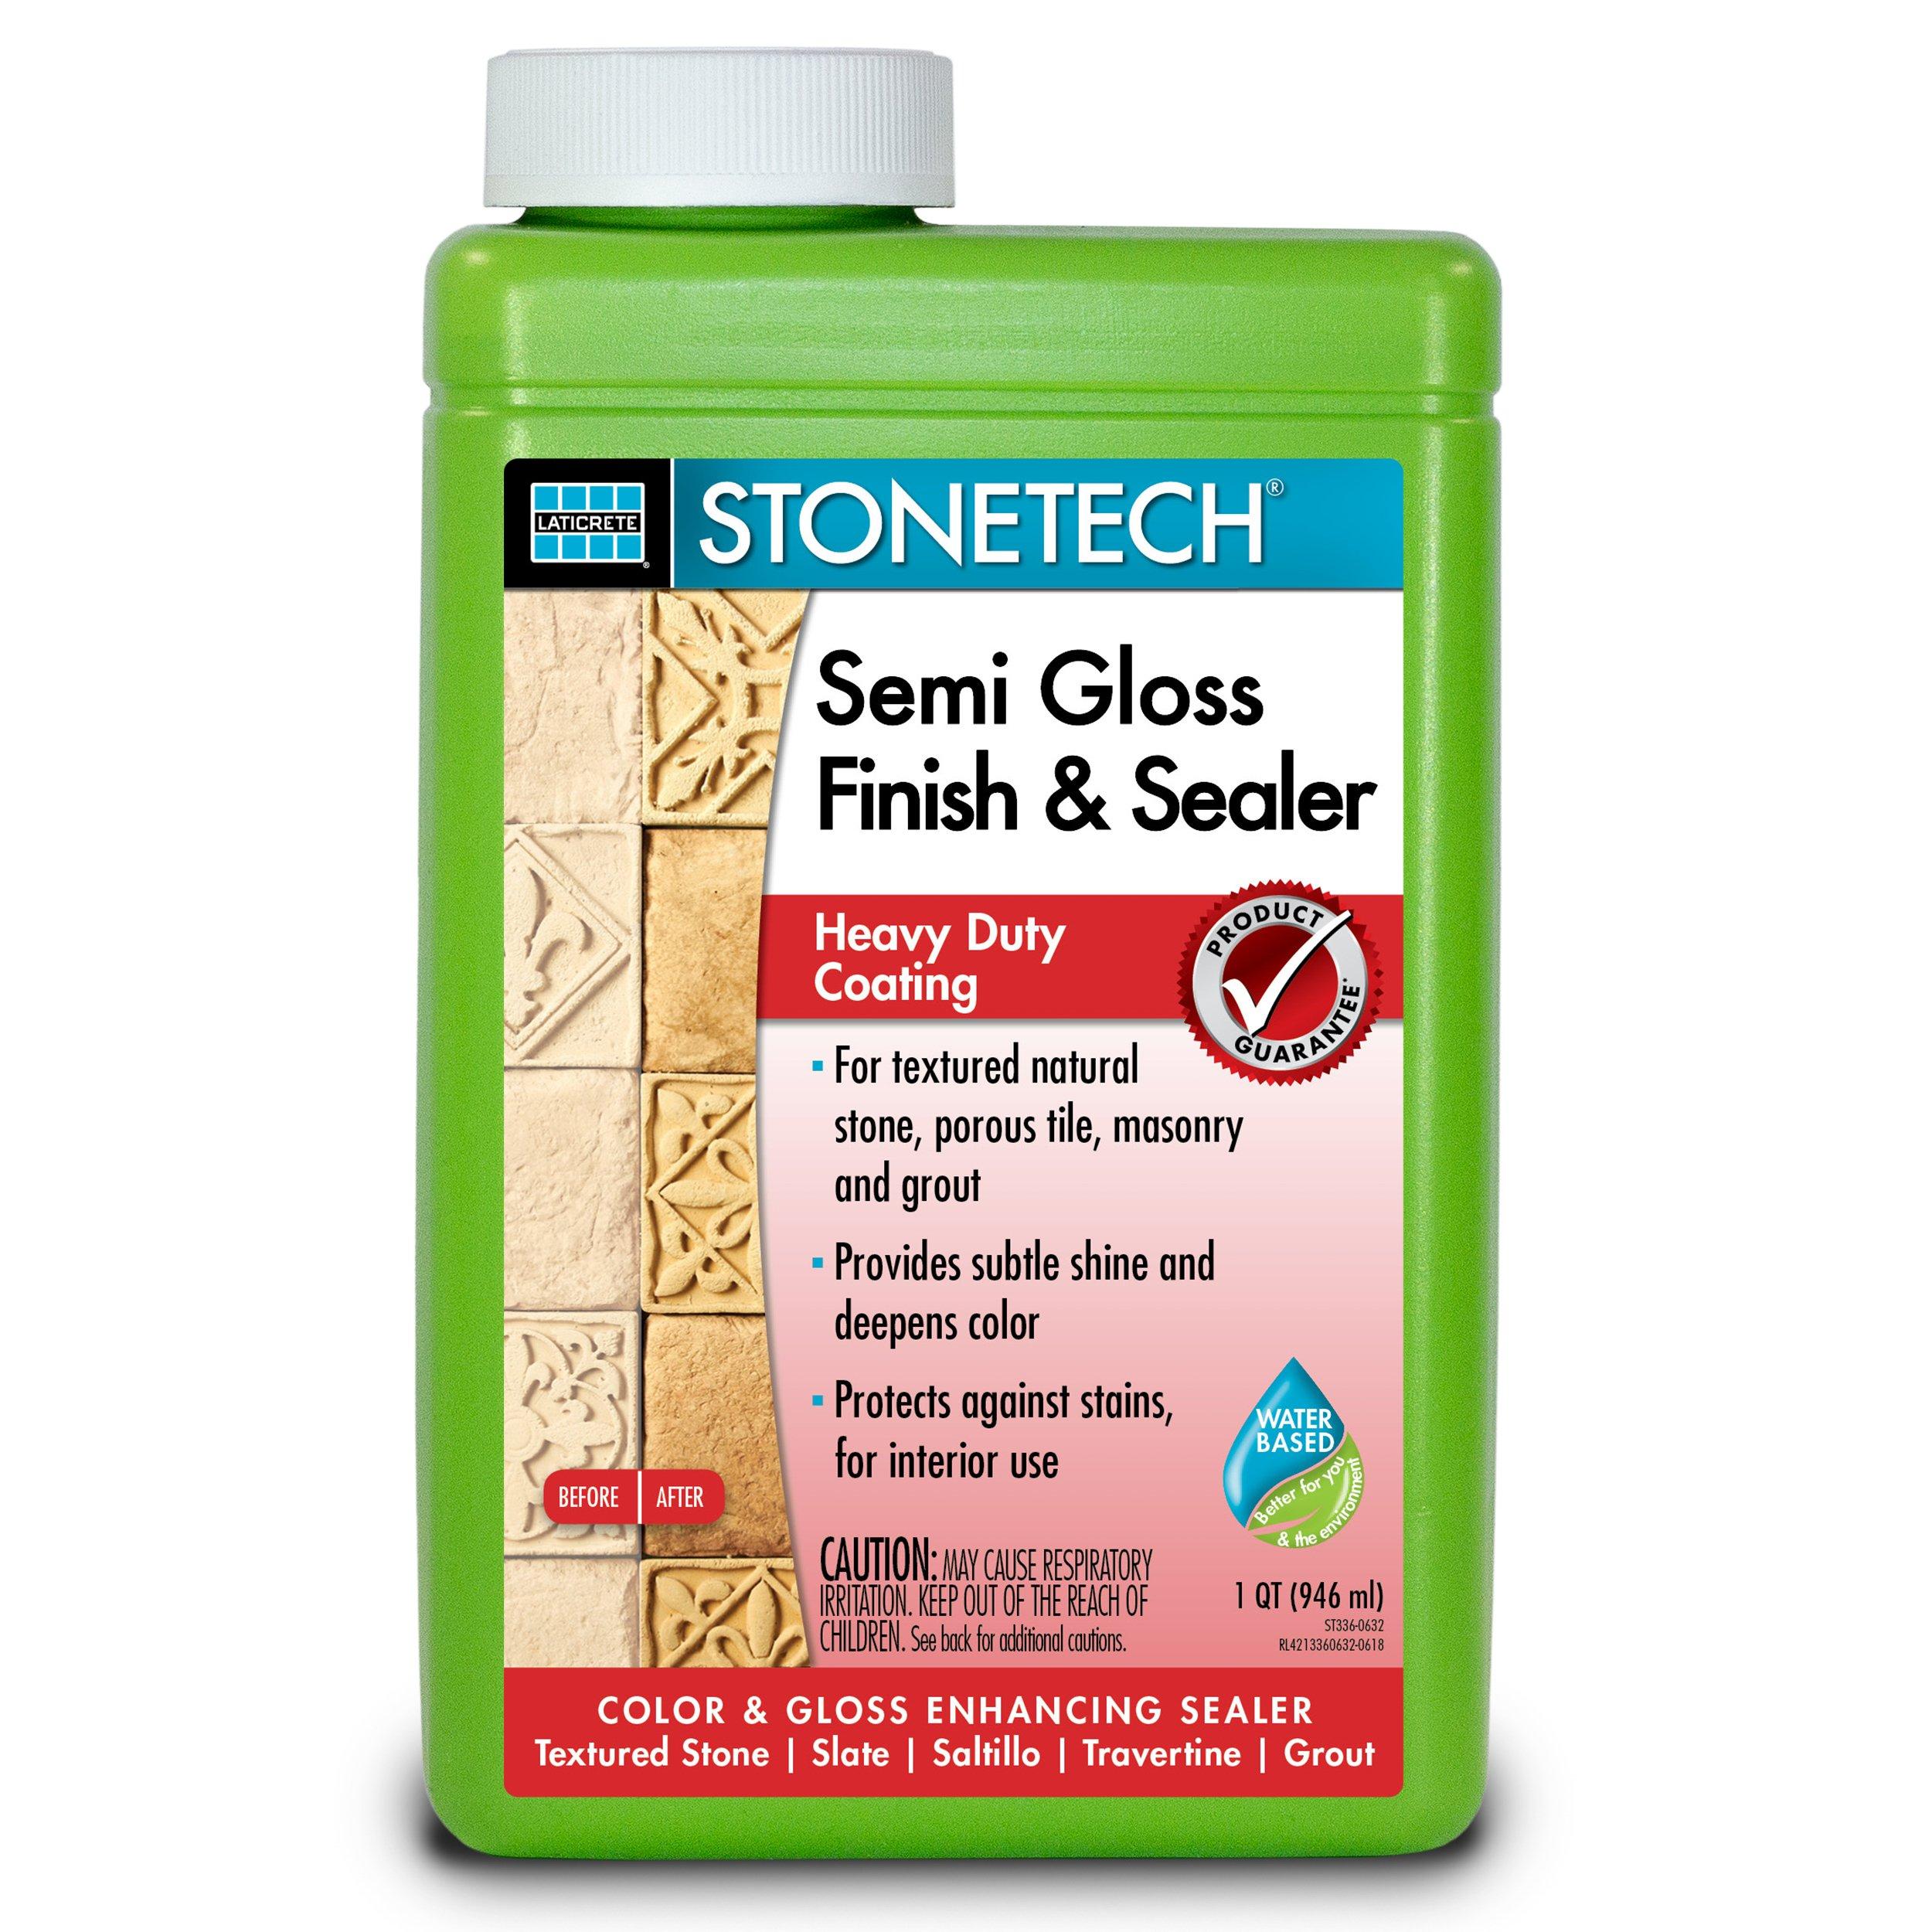 Laticrete Stonetech Semi Gloss Finish and Sealer